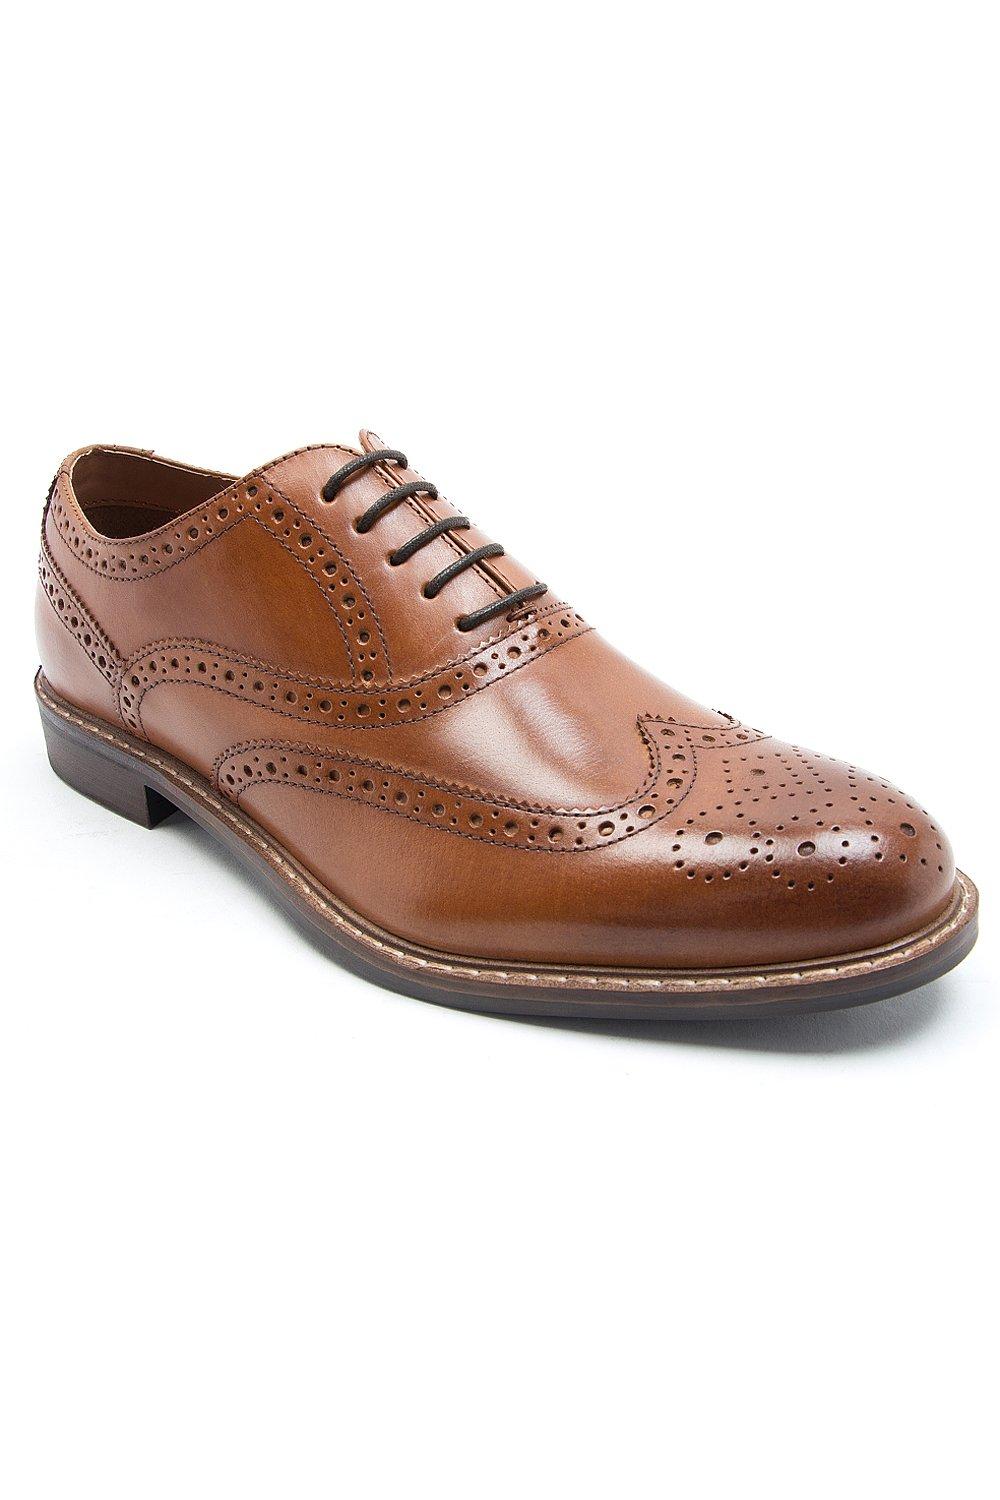 Деловые классические кожаные туфли-броги 'Cardew' Thomas Crick, коричневый формальные кожаные туфли броги дерби на шнуровке travis thomas crick коричневый